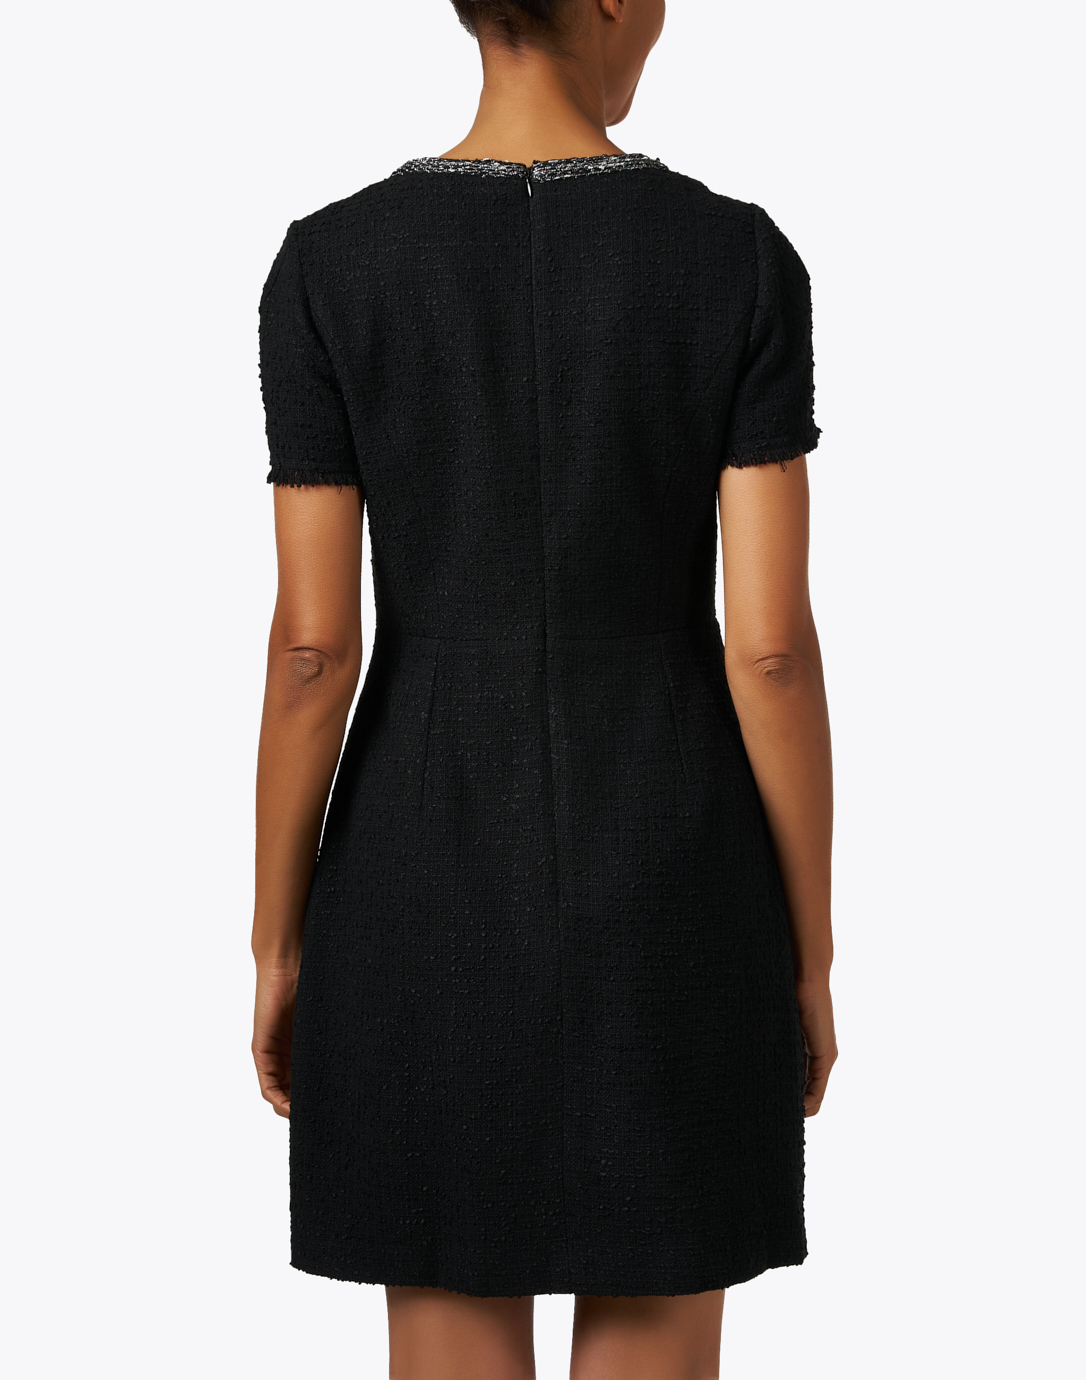 日本で買Canal Tweed Mini Dress S BLACK herlipto ワンピース